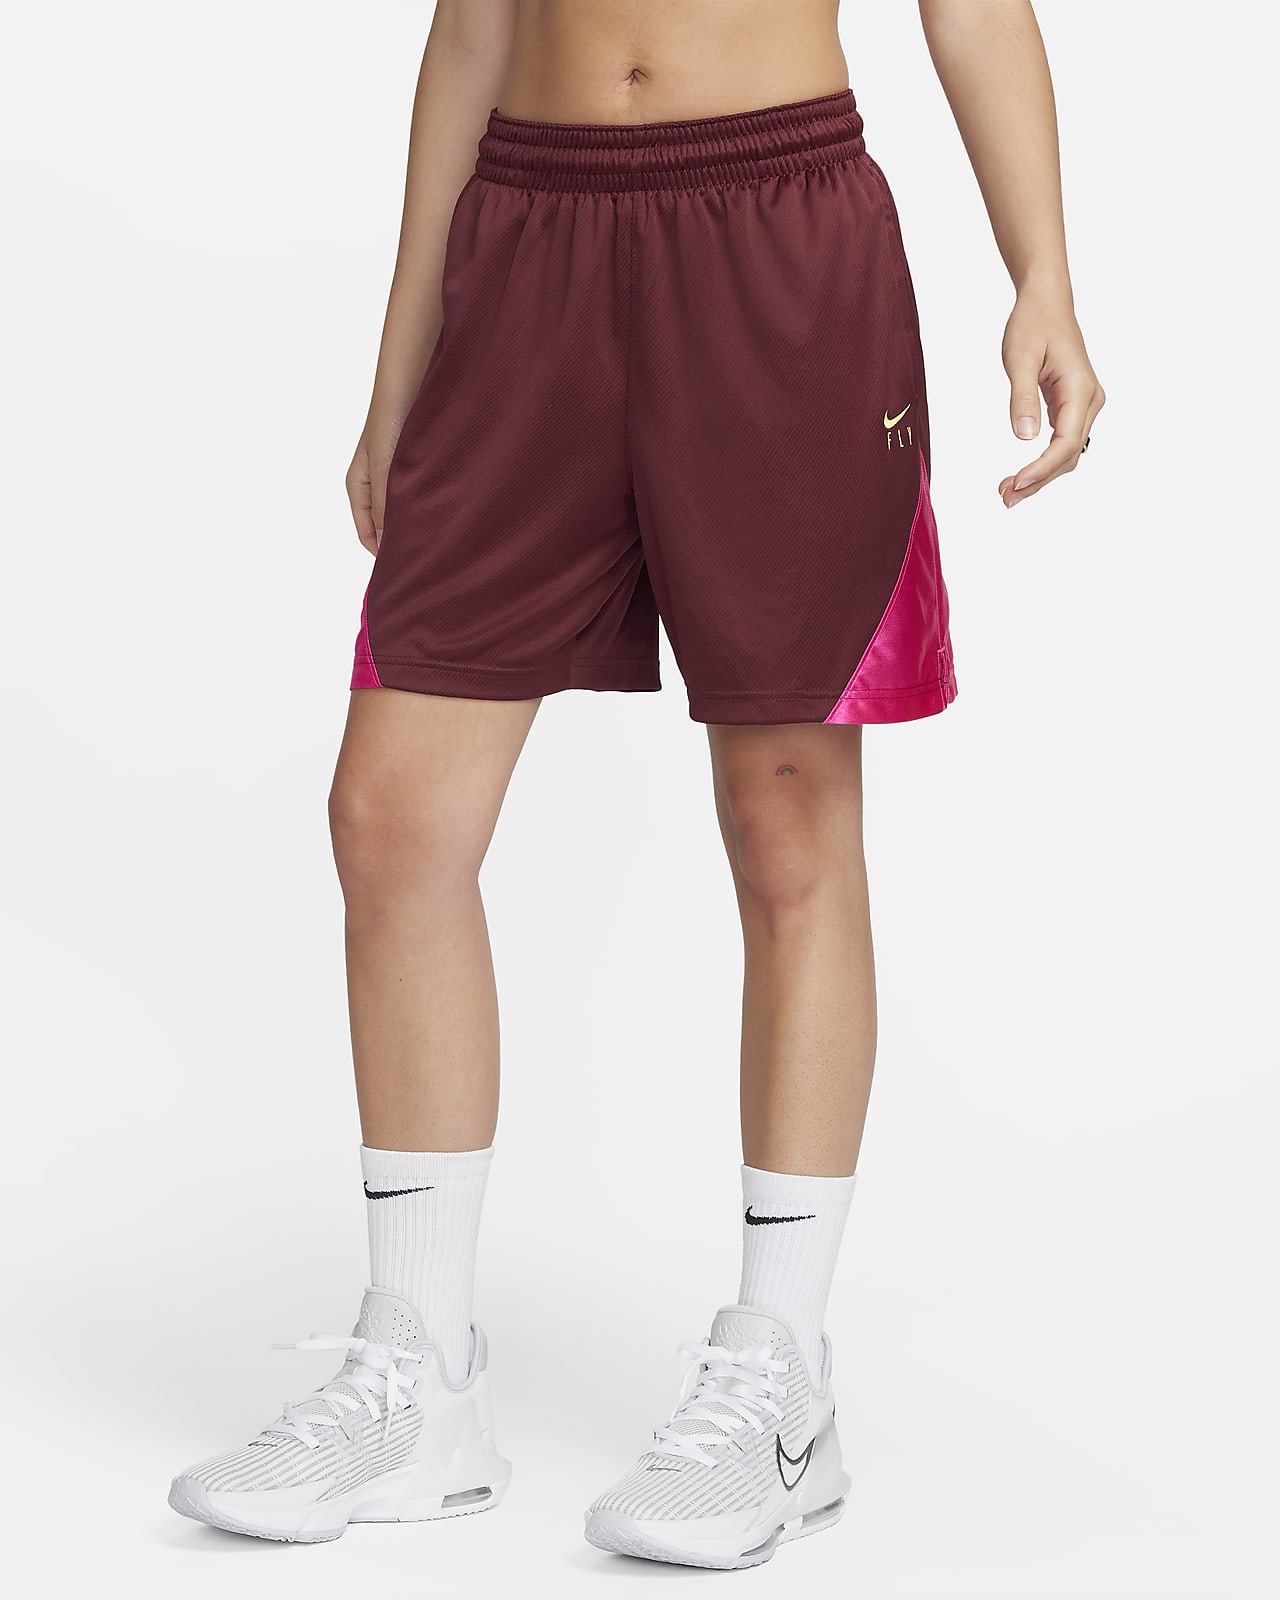 Nike, Women's Shorts